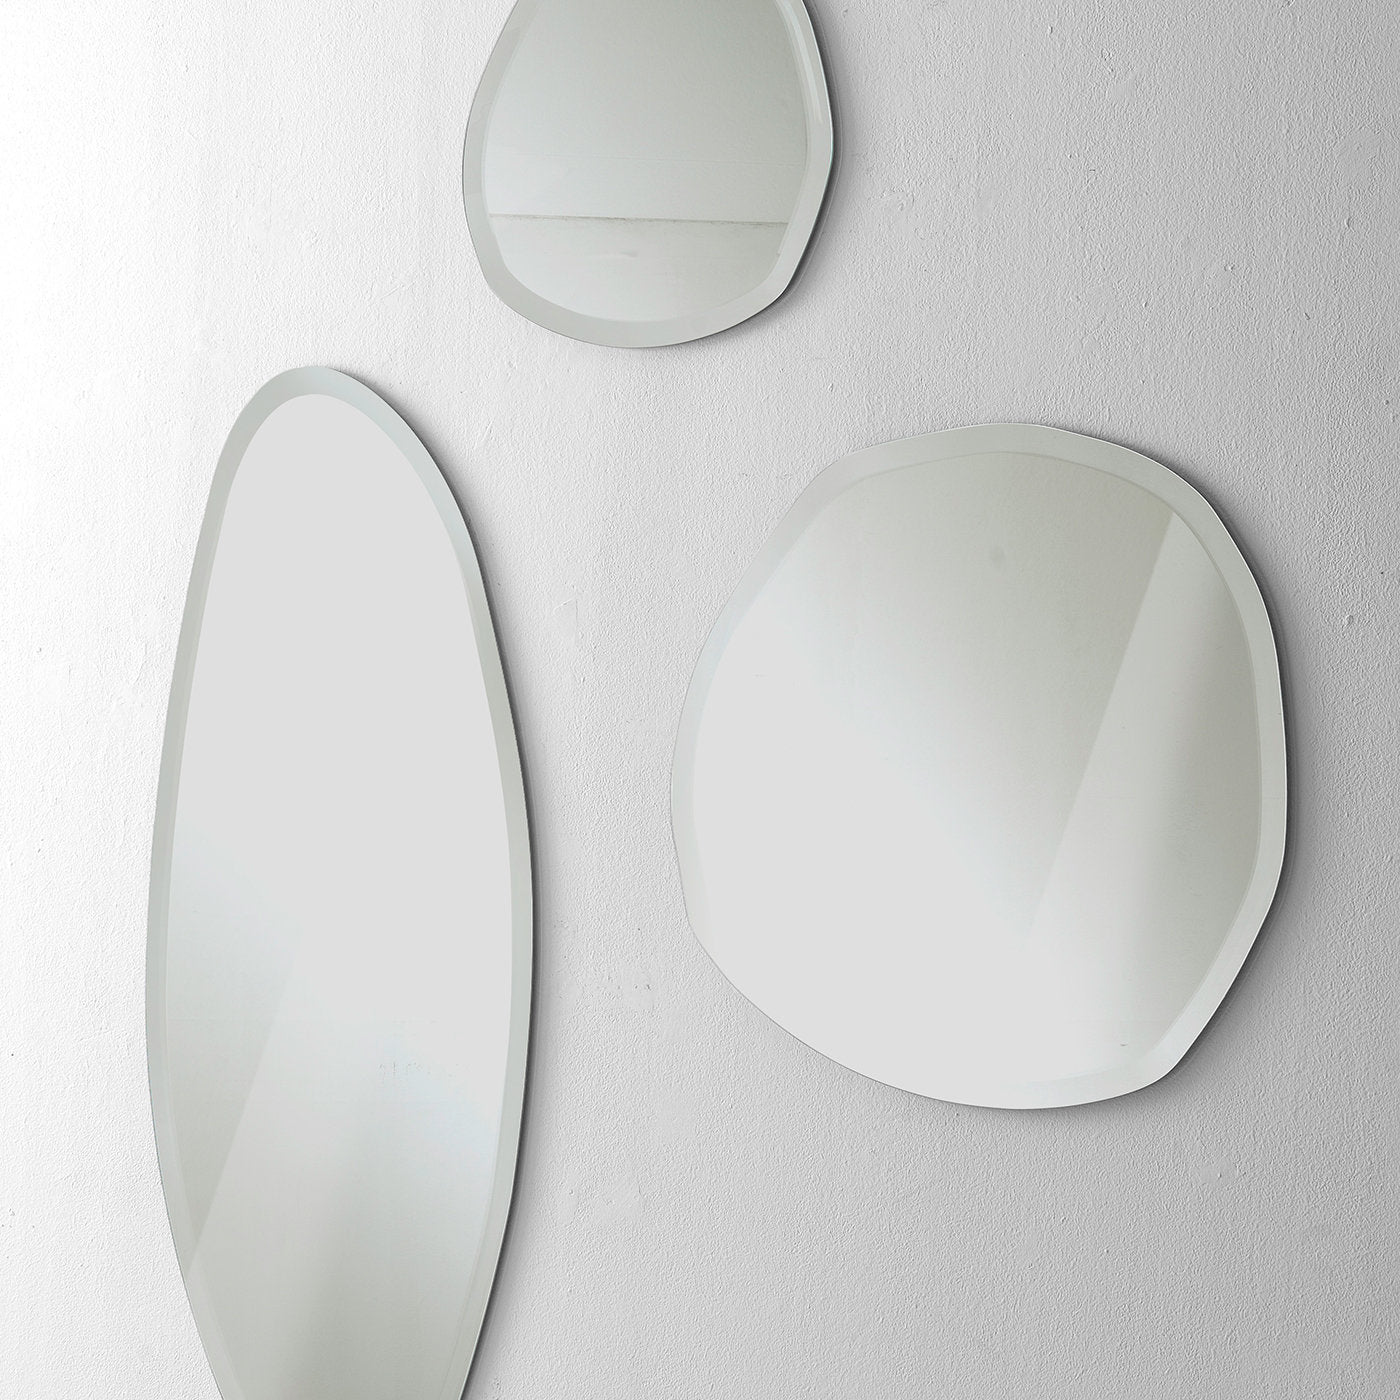 Stone Wall Mirror #3 by Norberto Delfinetti - Alternative view 1